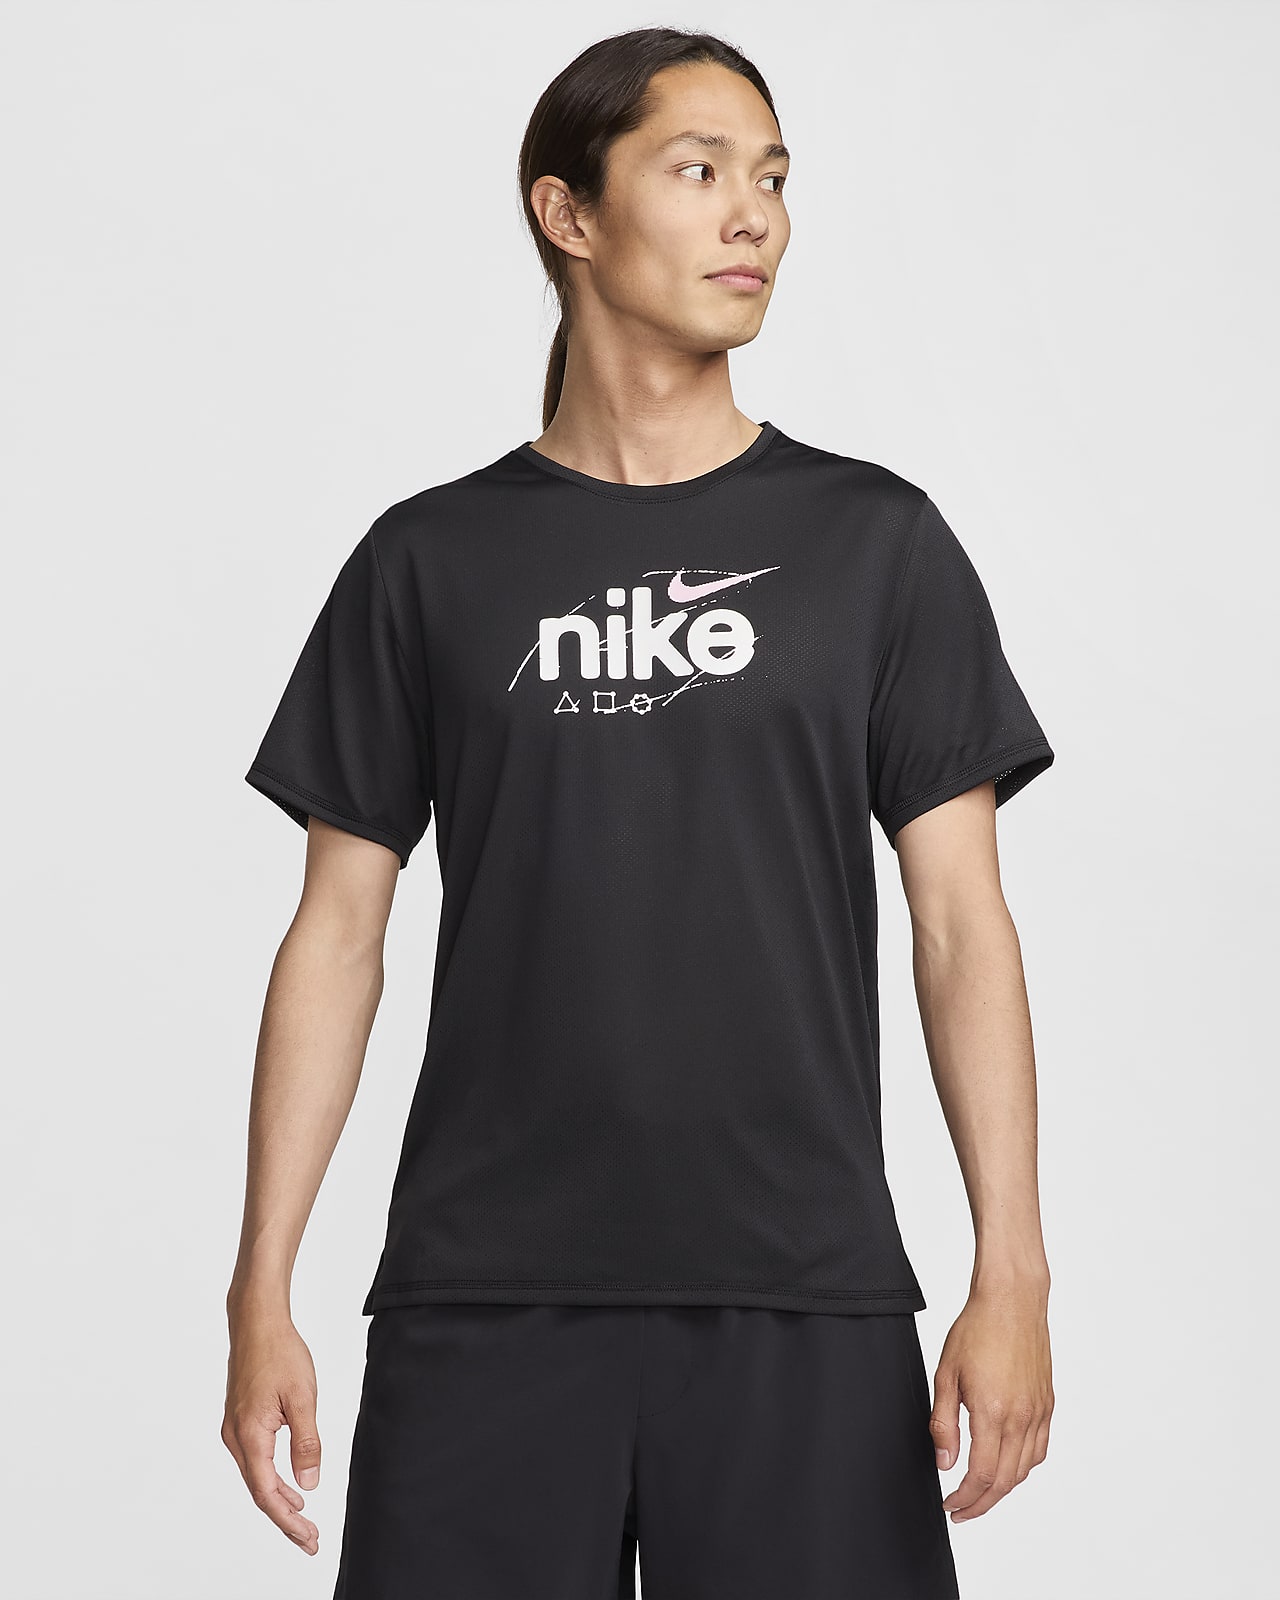 Nike Dri-FIT Miler D.Y.E. เสื้อวิ่งแขนสั้นผู้ชาย